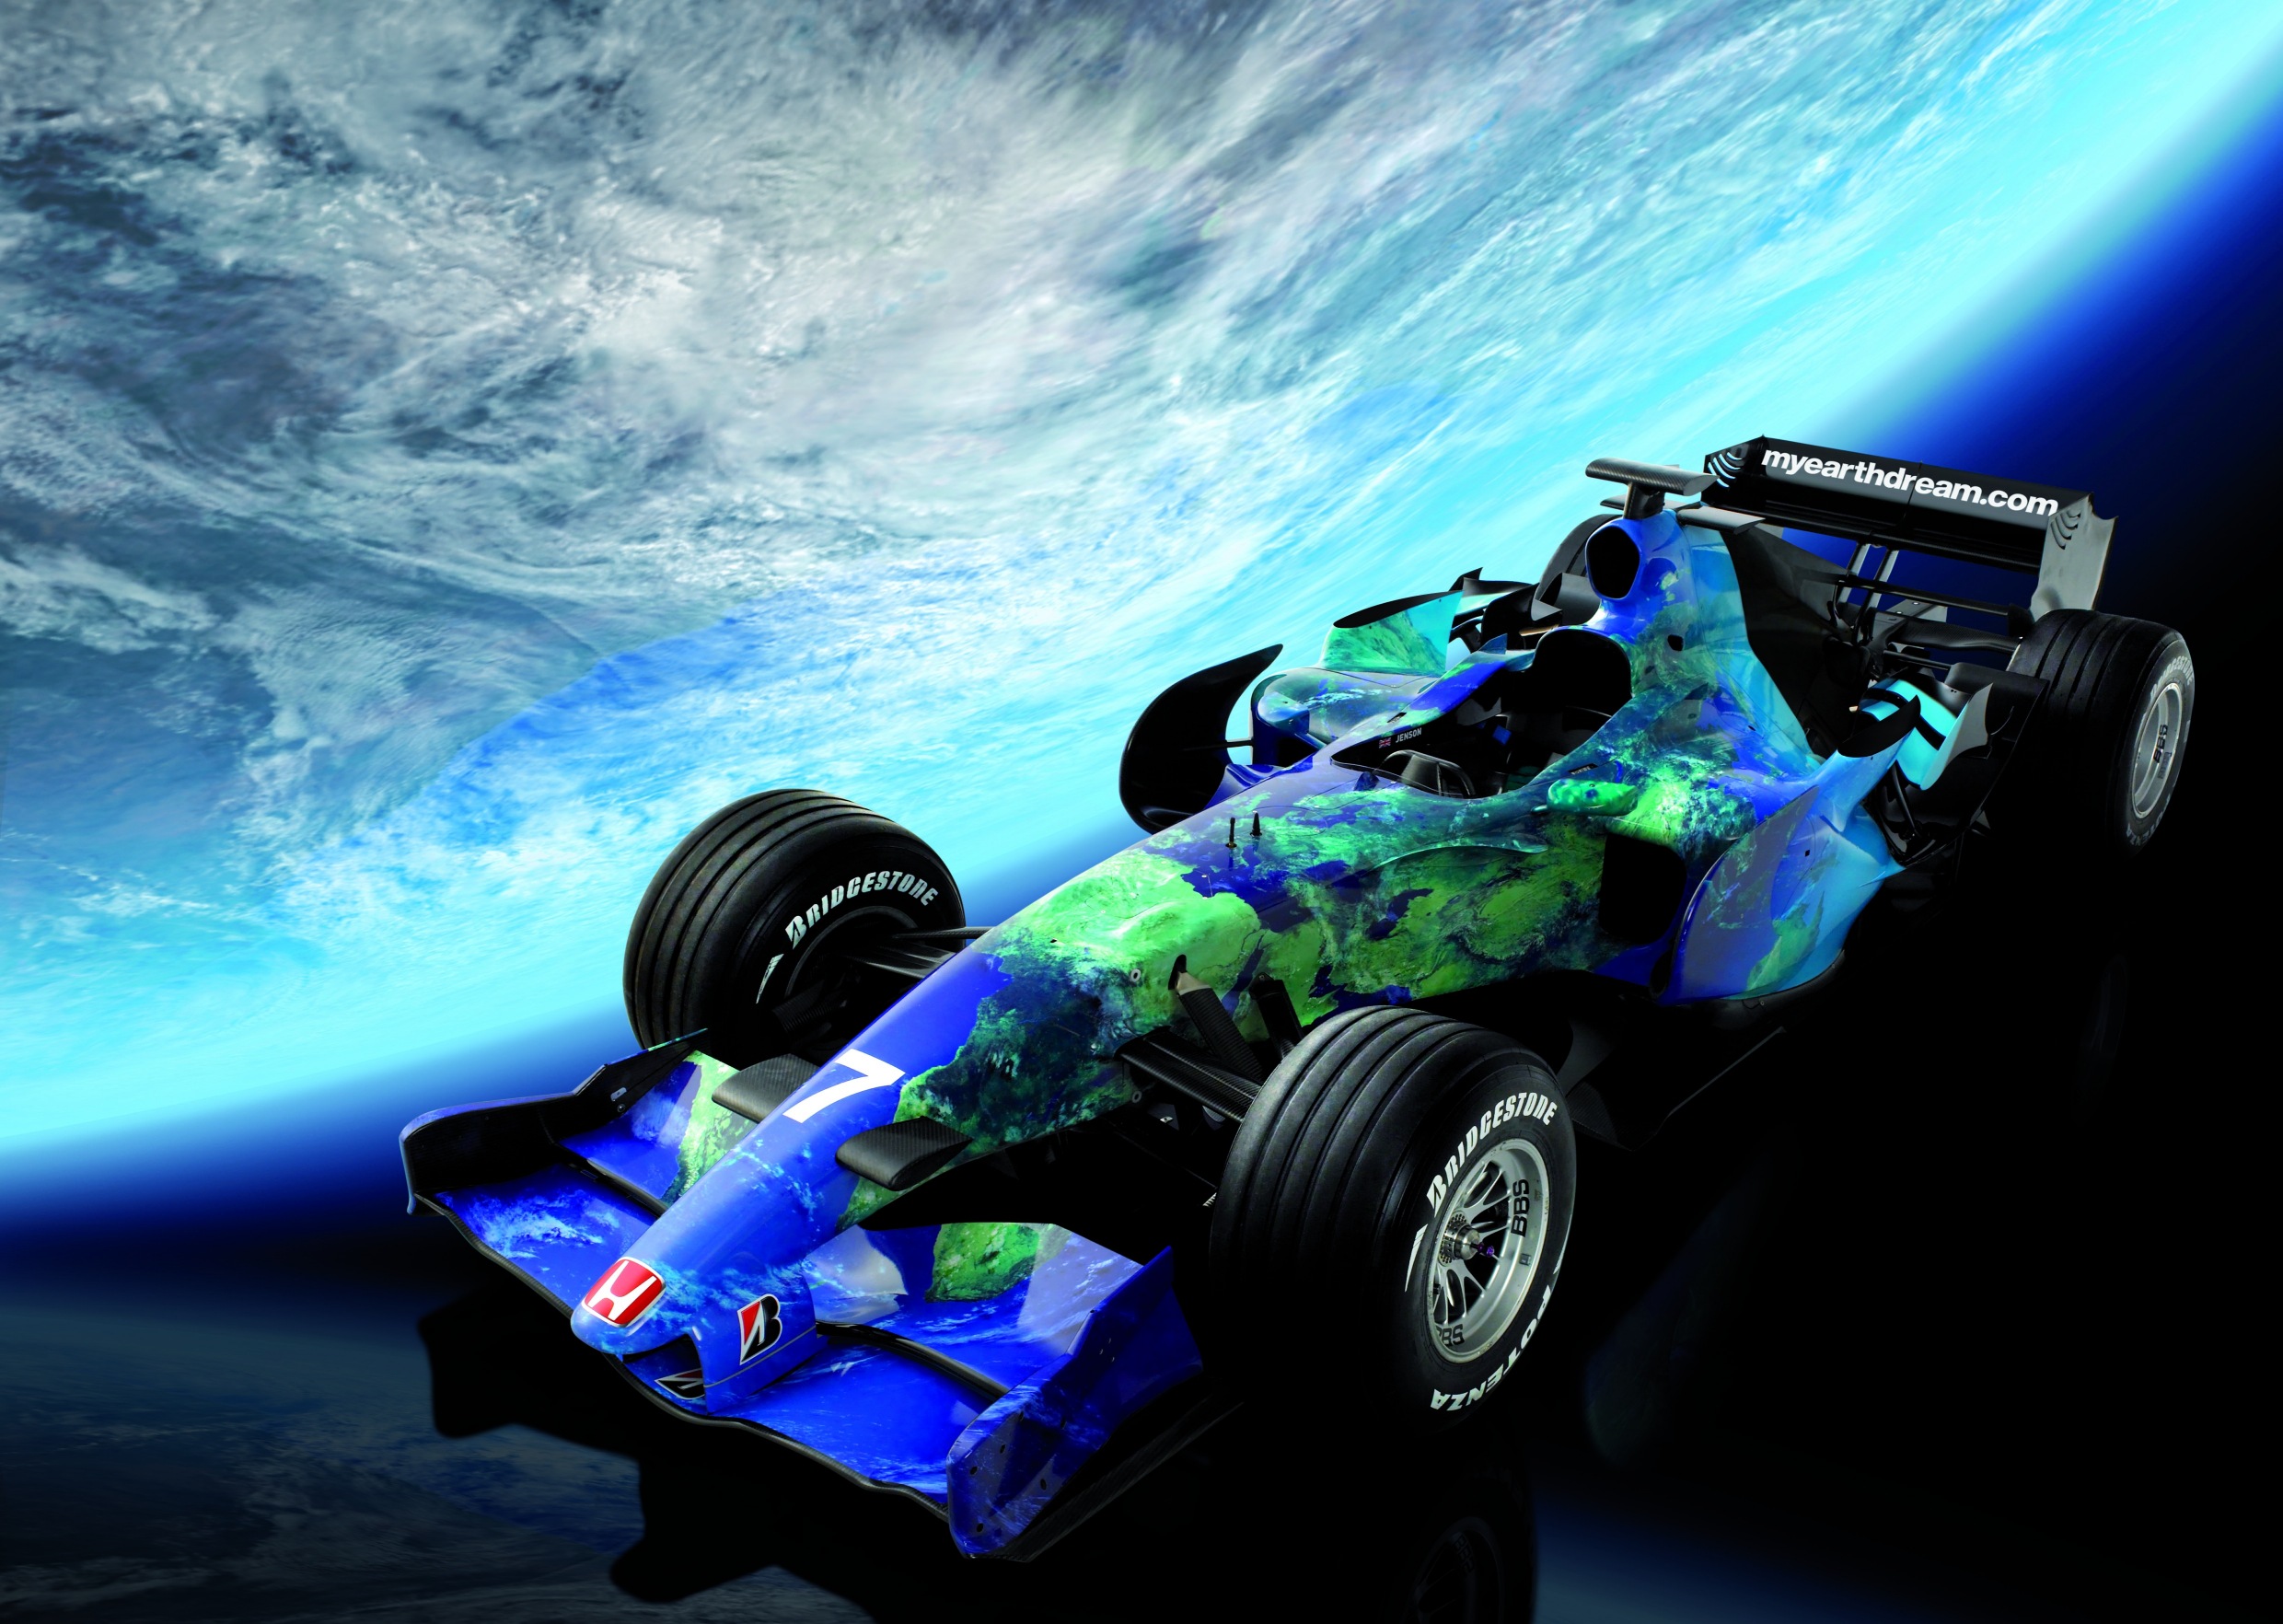 Honda Racing's F1 Environmental Concept. Image by Honda.